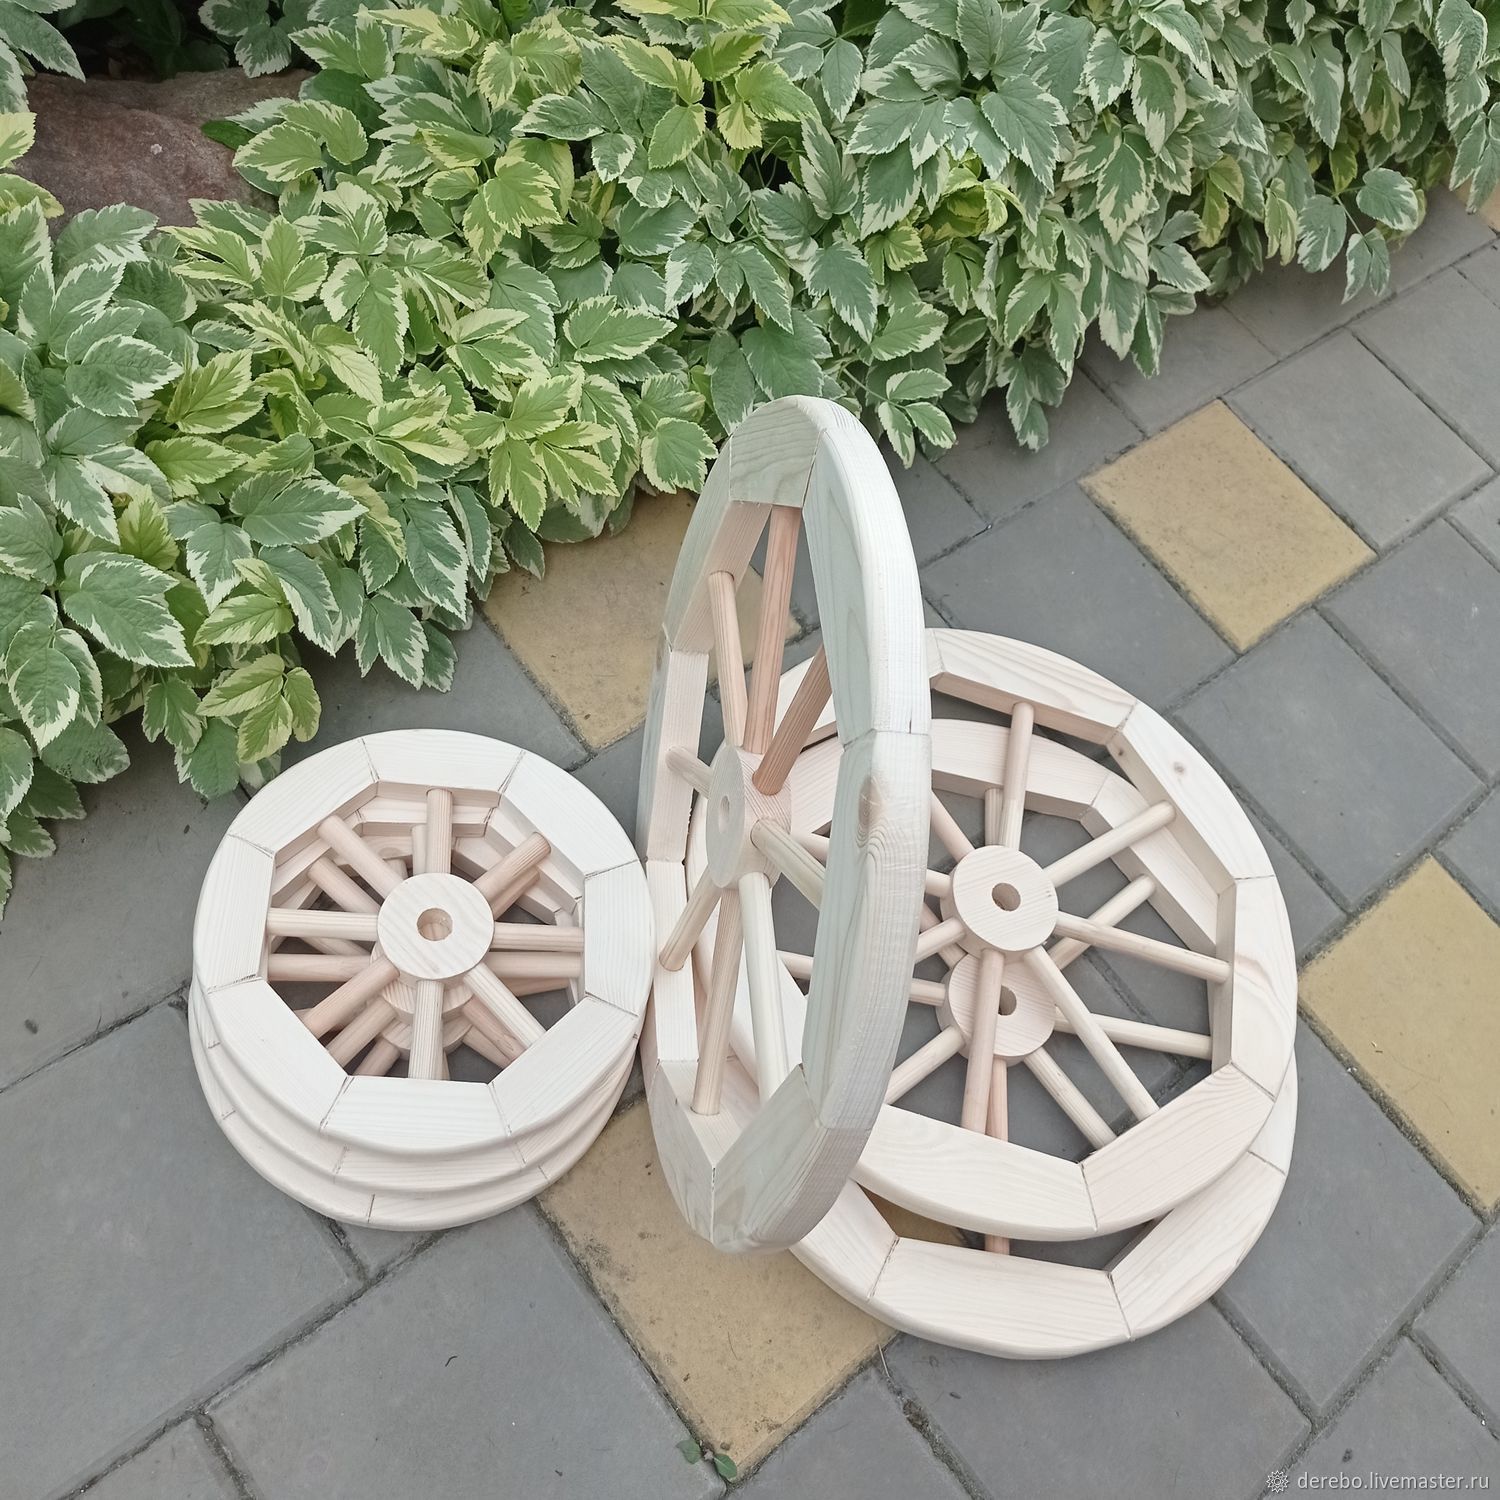 Идея для декора сада от Ольги Вороновой: салаты в тележном колесе